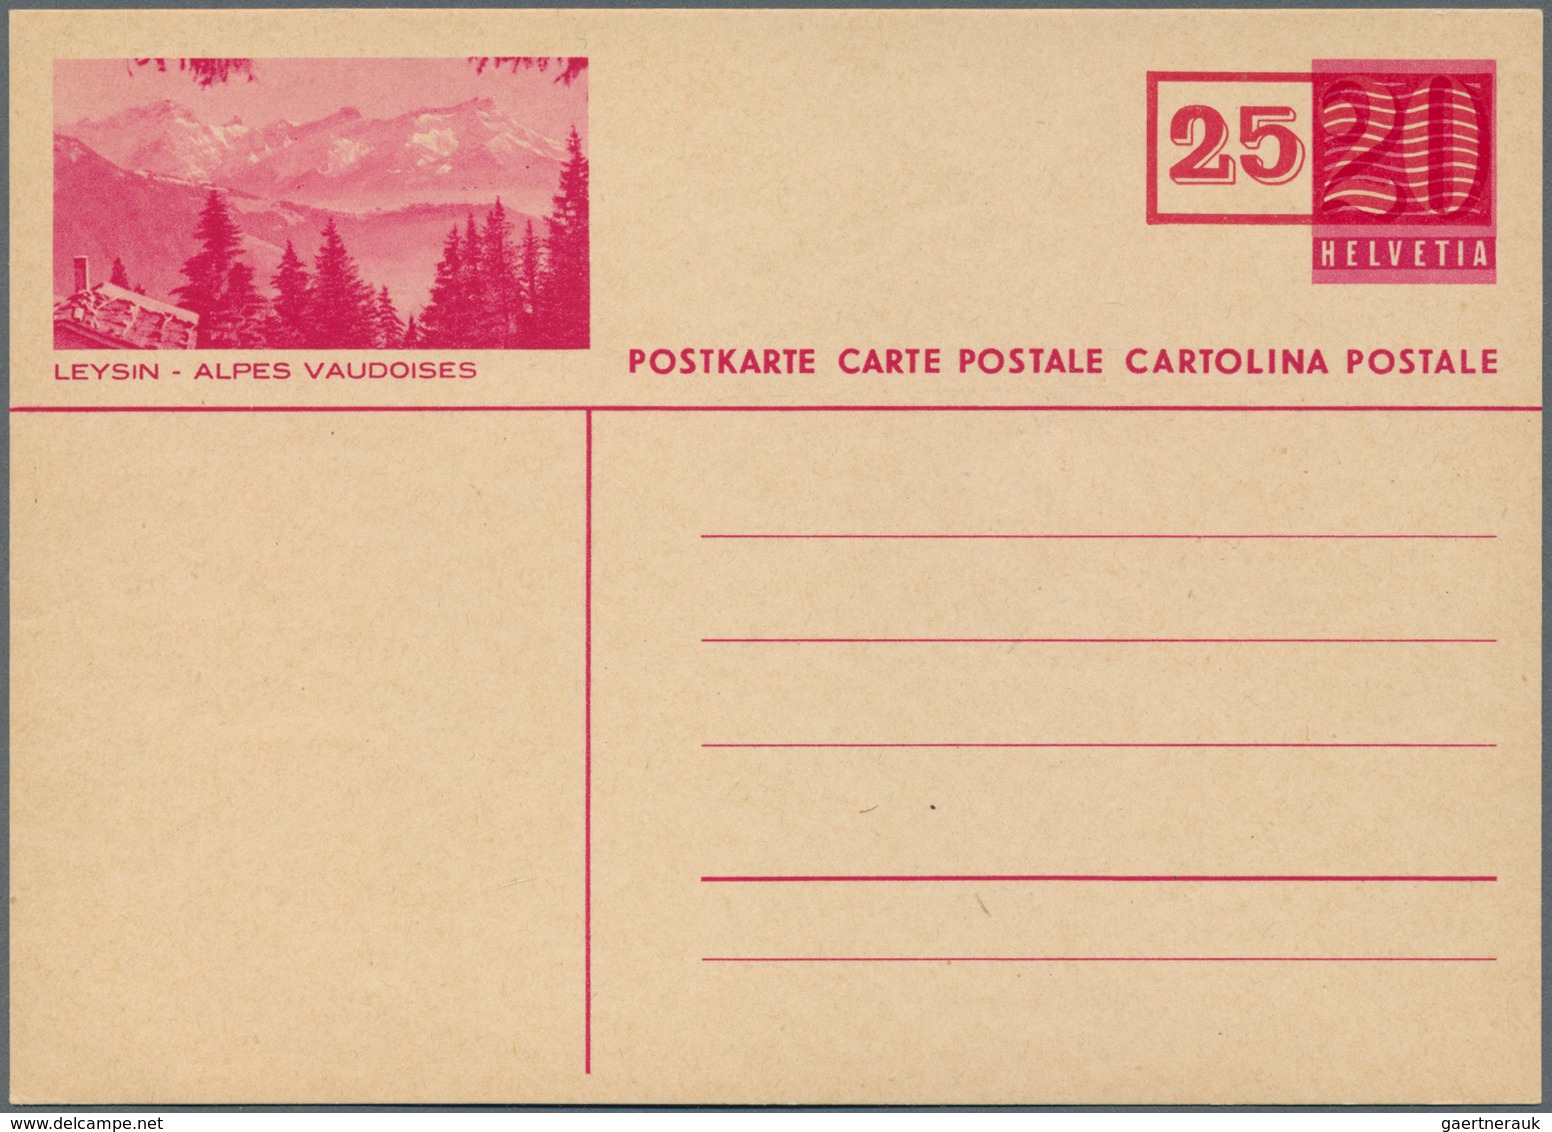 Schweiz - Ganzsachen: 1948. Lot von 9 Bild-Postkarten 25 auf 20 (c), nur versch. Bilder, dabei auch